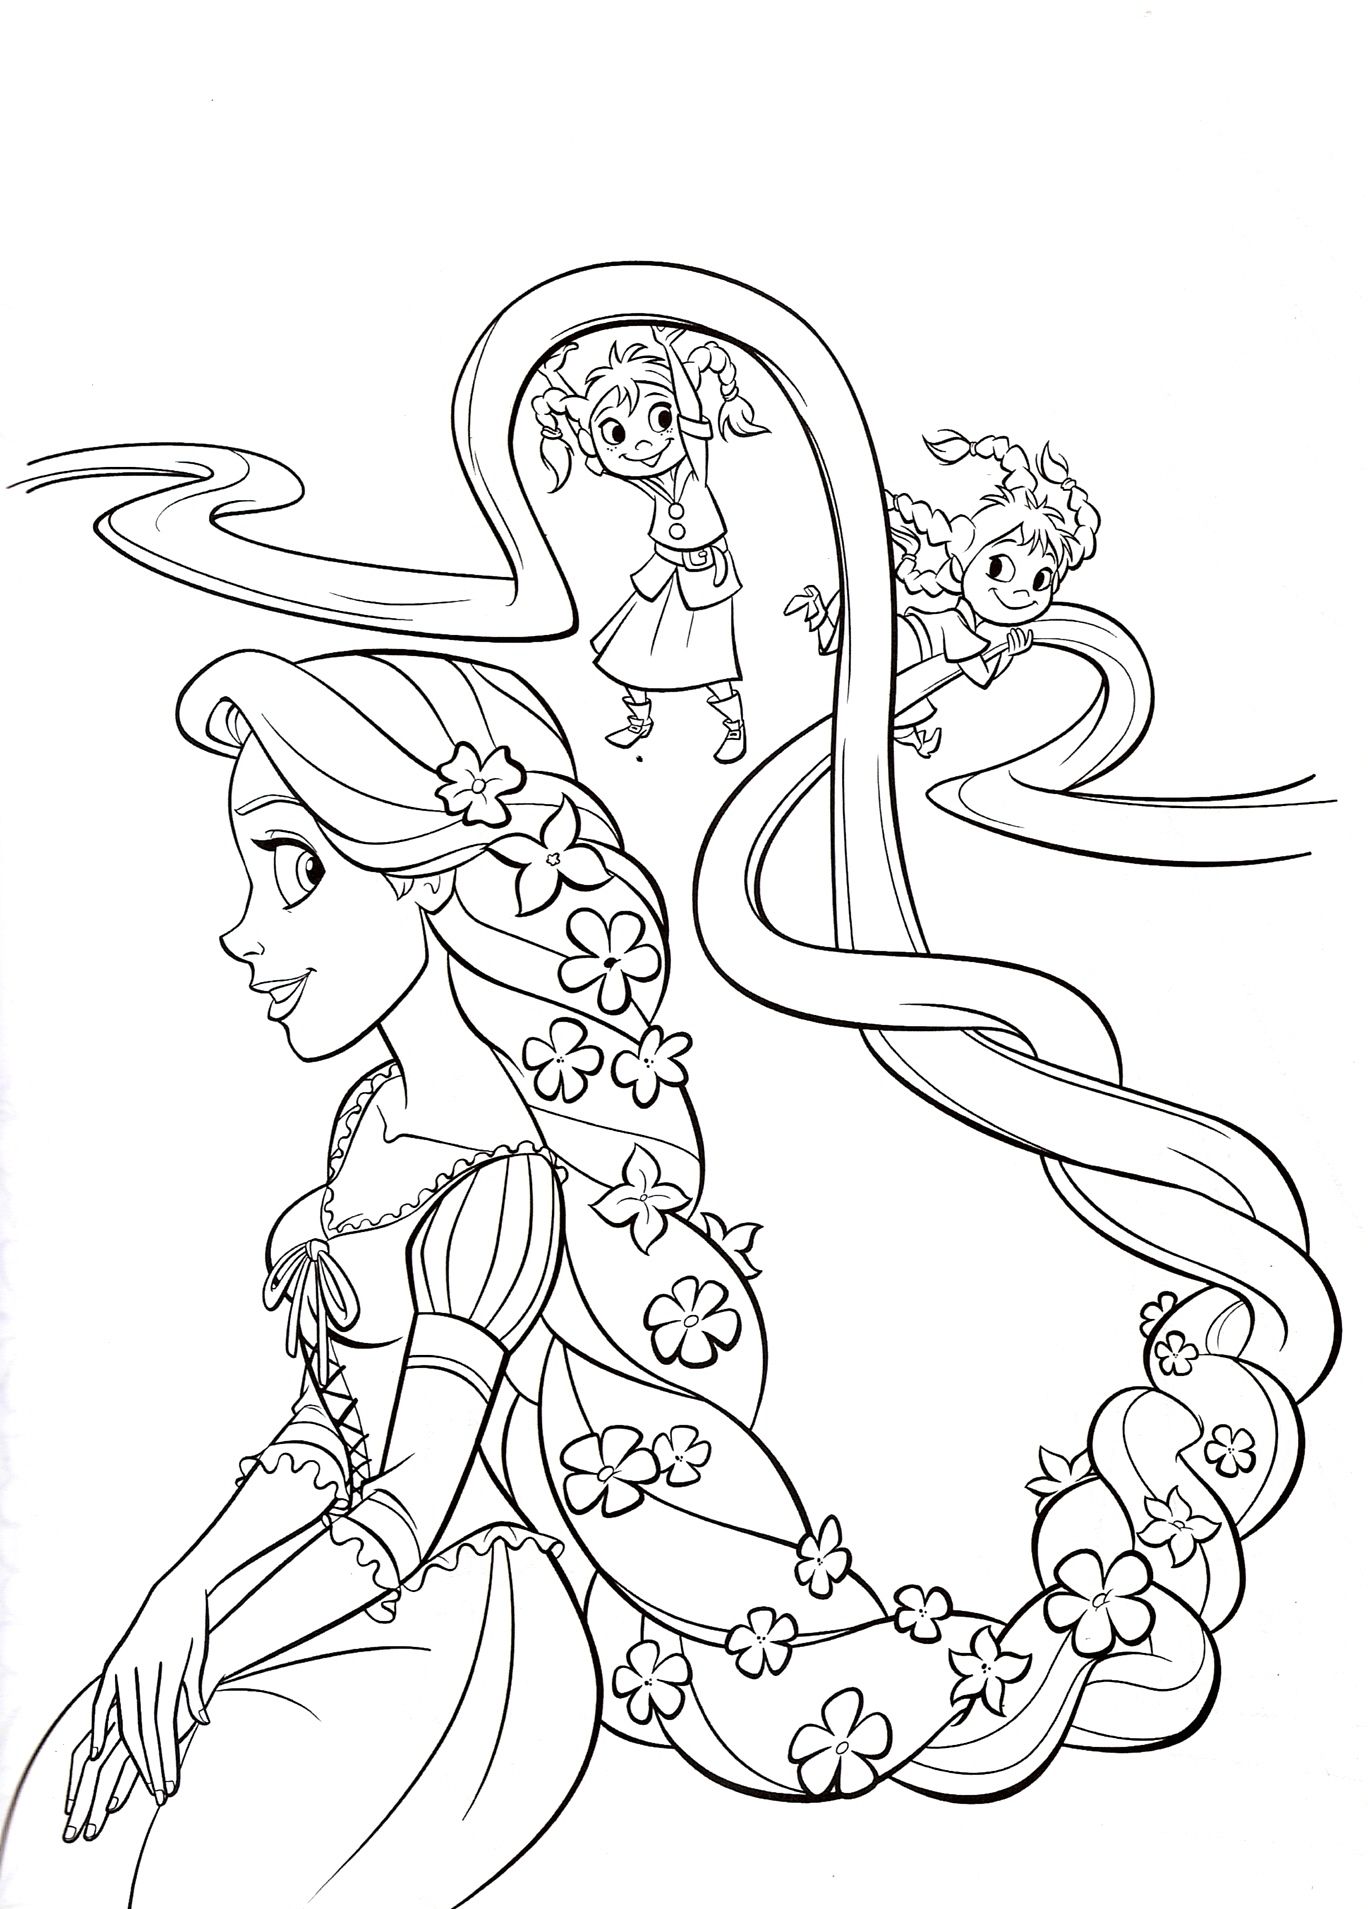 Dibujos de las princesas para colorear e imprimir archivos pãginas para colorear de princesa colorear disney colorear princesas disney